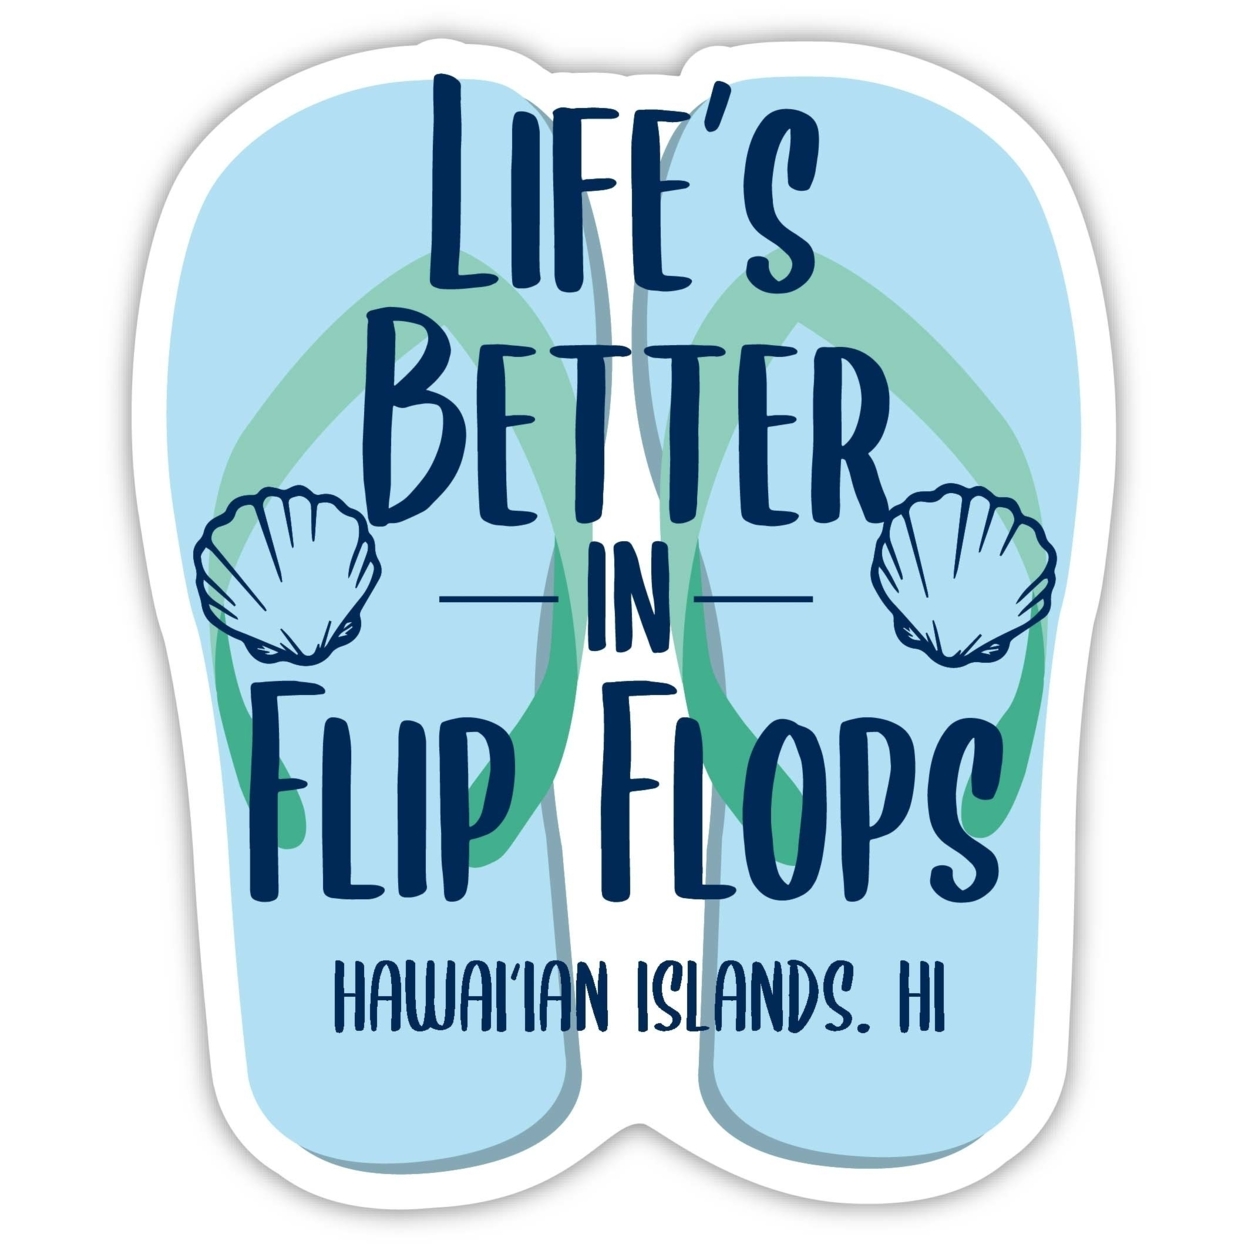 HawaiâIan Islands Hawaii Souvenir 4 Inch Vinyl Decal Sticker Flip Flop Design